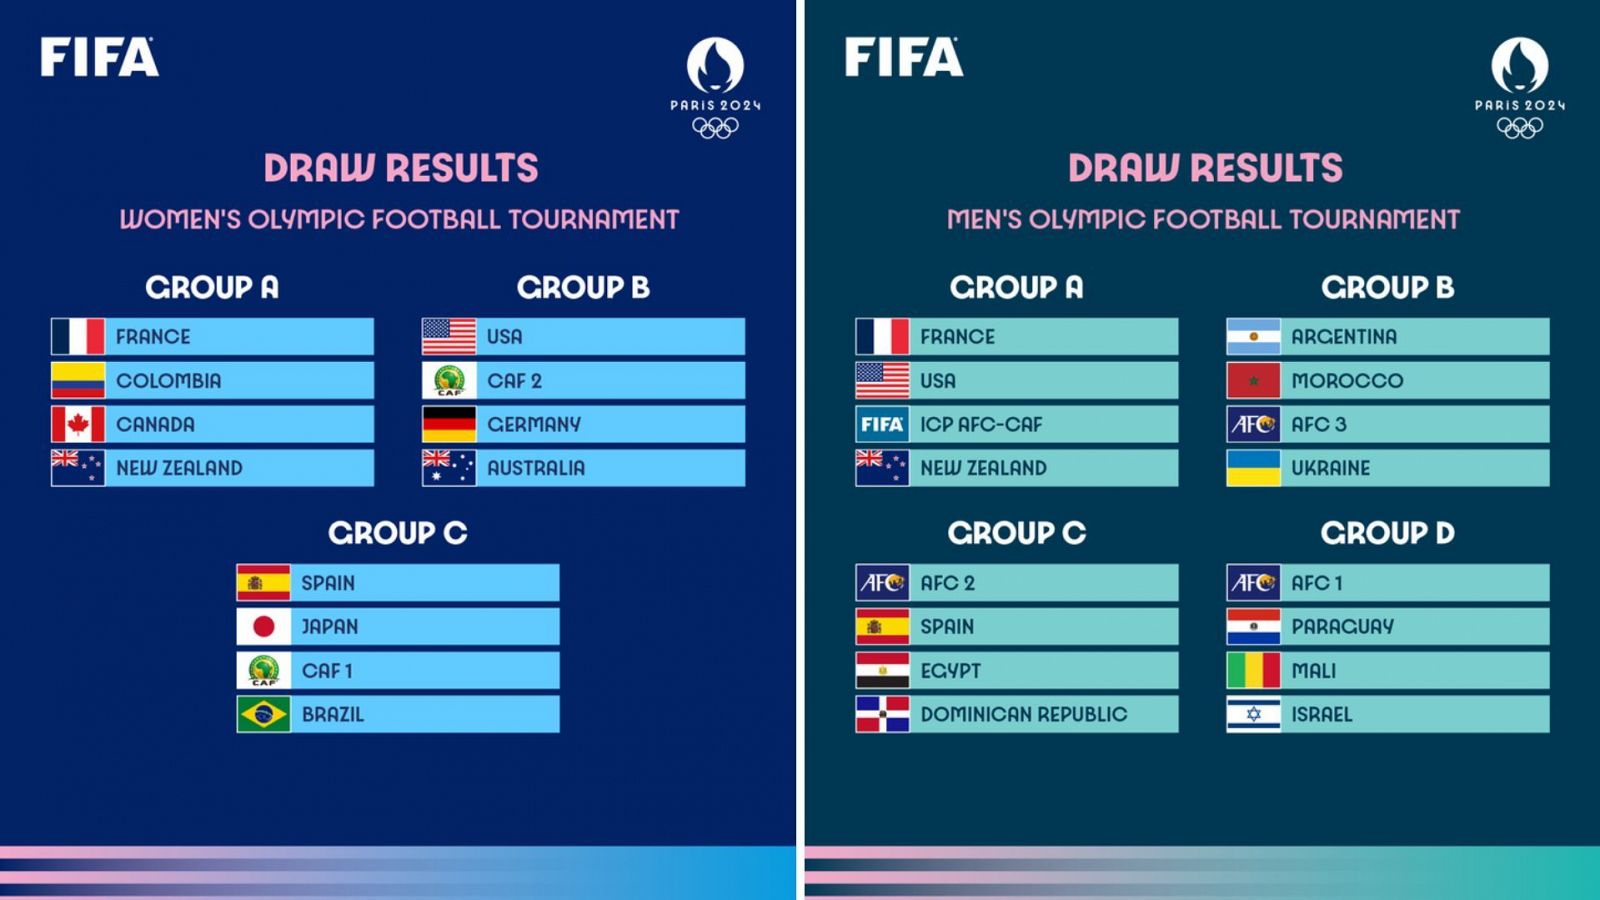 Sorteo de los grupos de los torneos de fútbol de los Juegos de París 2024. A la izquierda el femenino y a la derecha el masculino